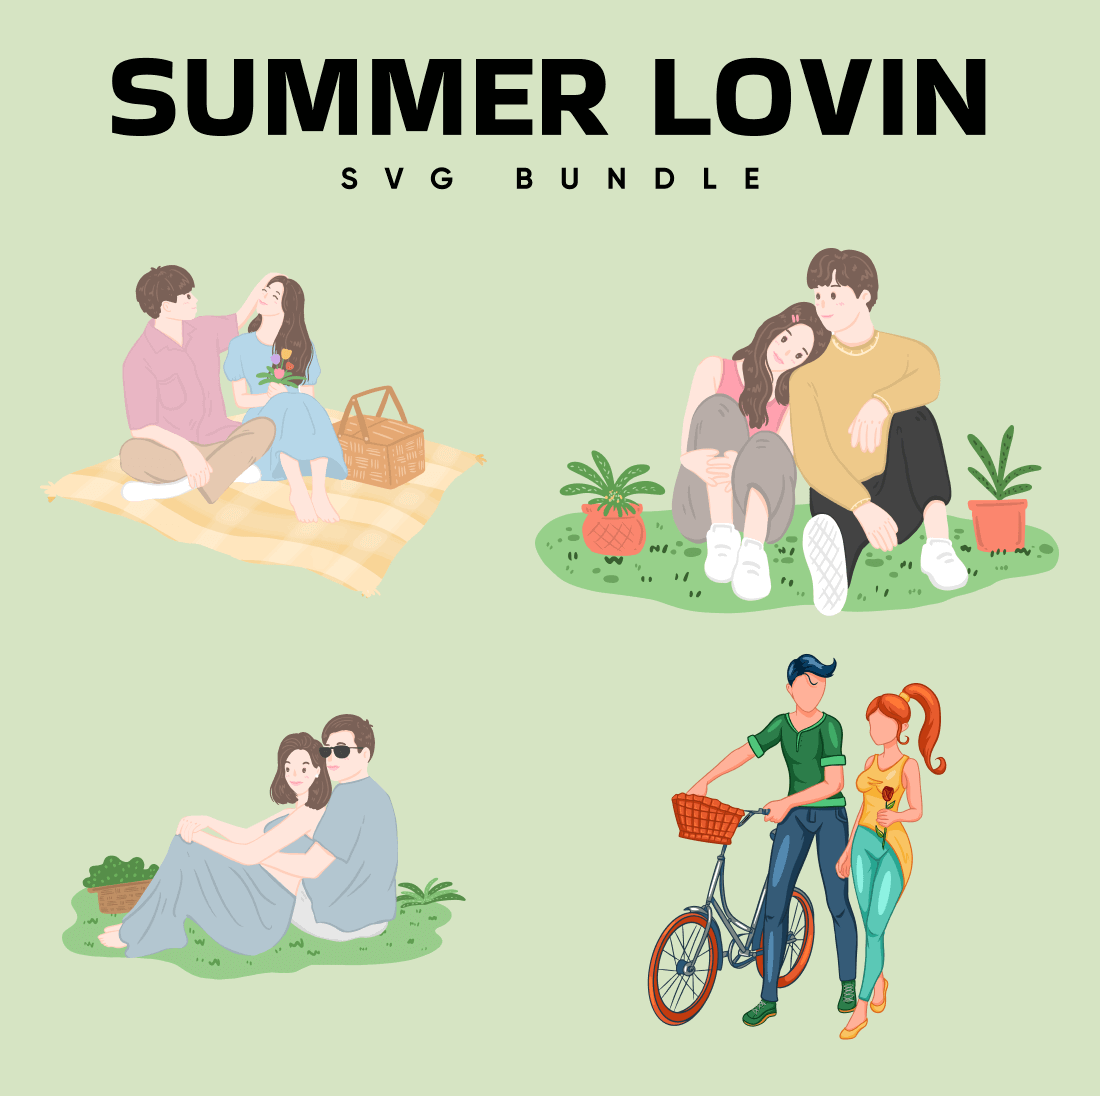 Summer Lovin SVG Bundle.